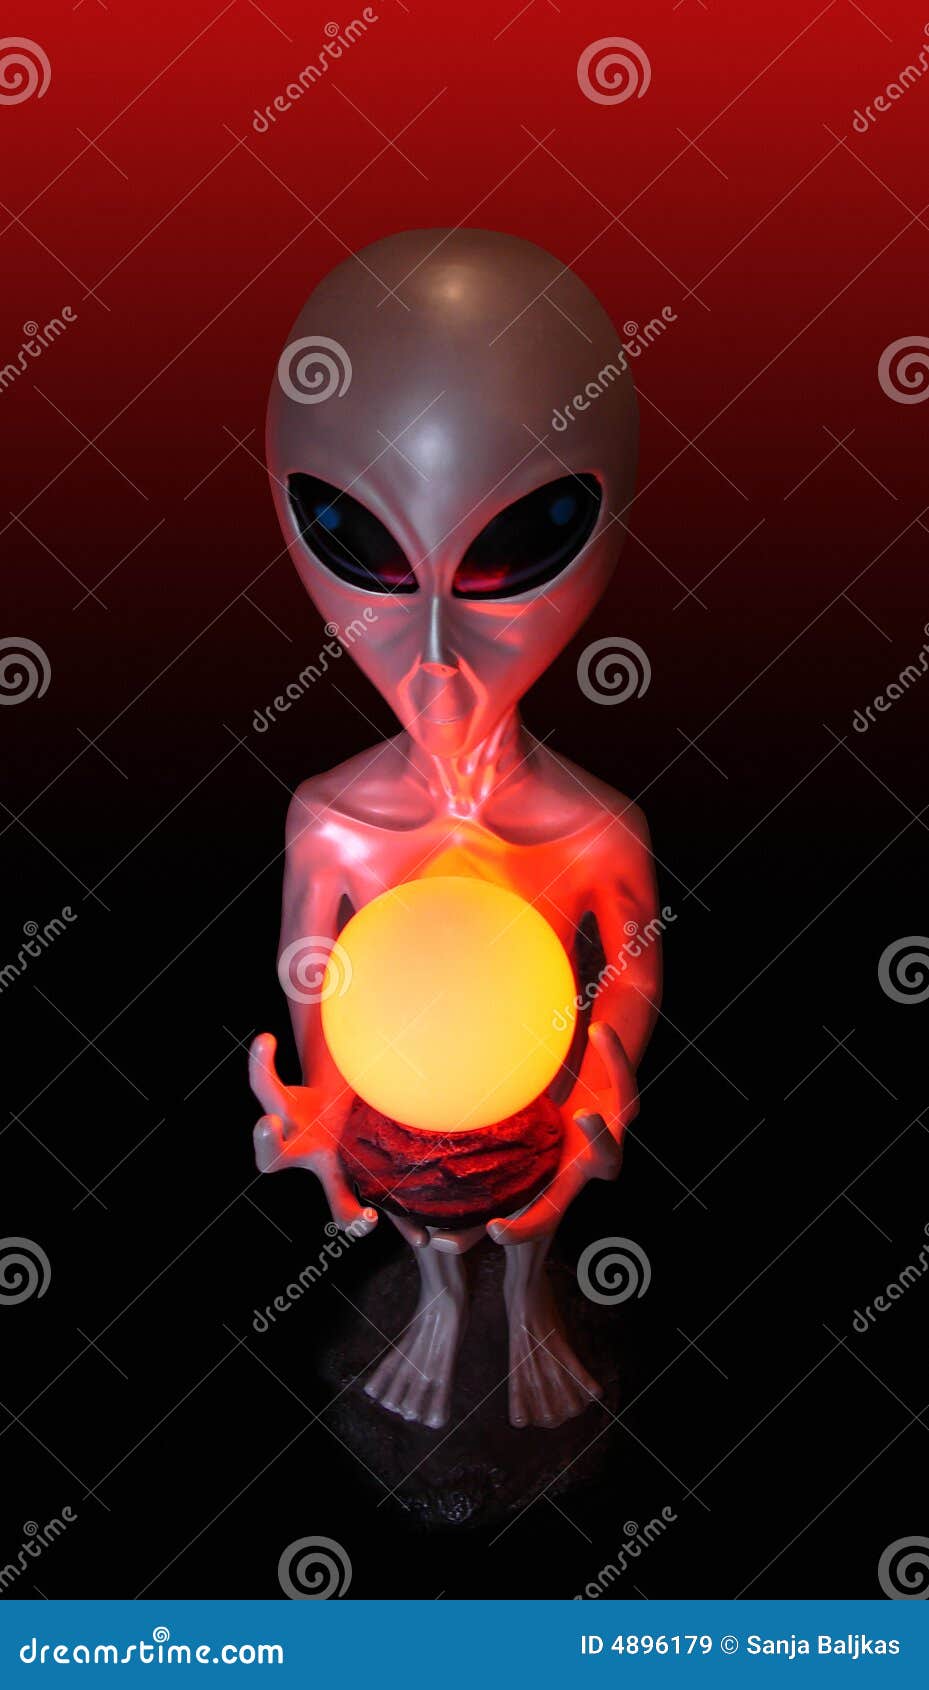 skinke utilgivelig sekstant Alien lamp stock image. Image of frown, devil, faces, danger - 4896179